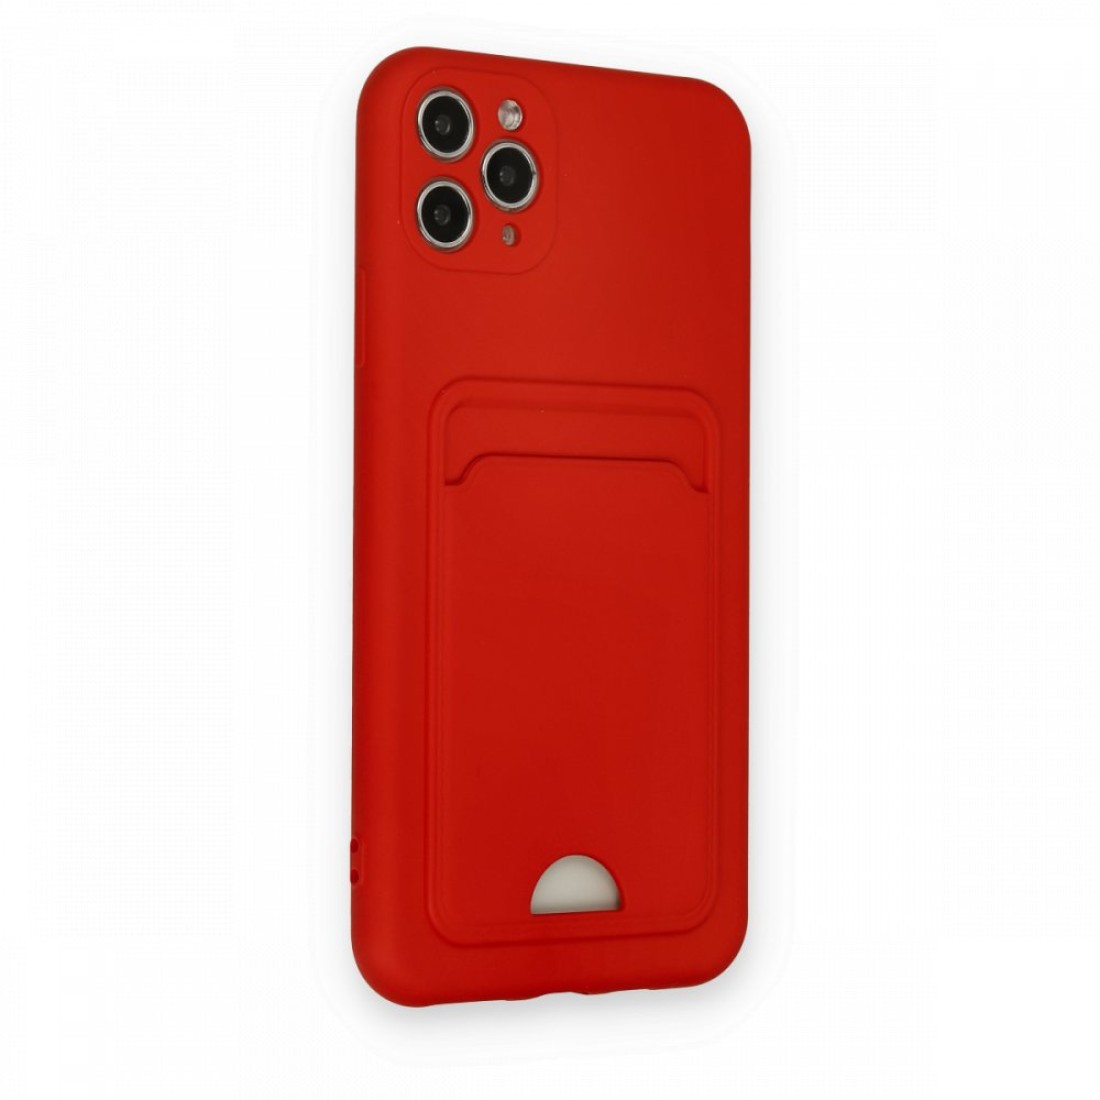 Apple iPhone 11 Pro Max Kılıf Kelvin Kartvizitli Silikon - Kırmızı